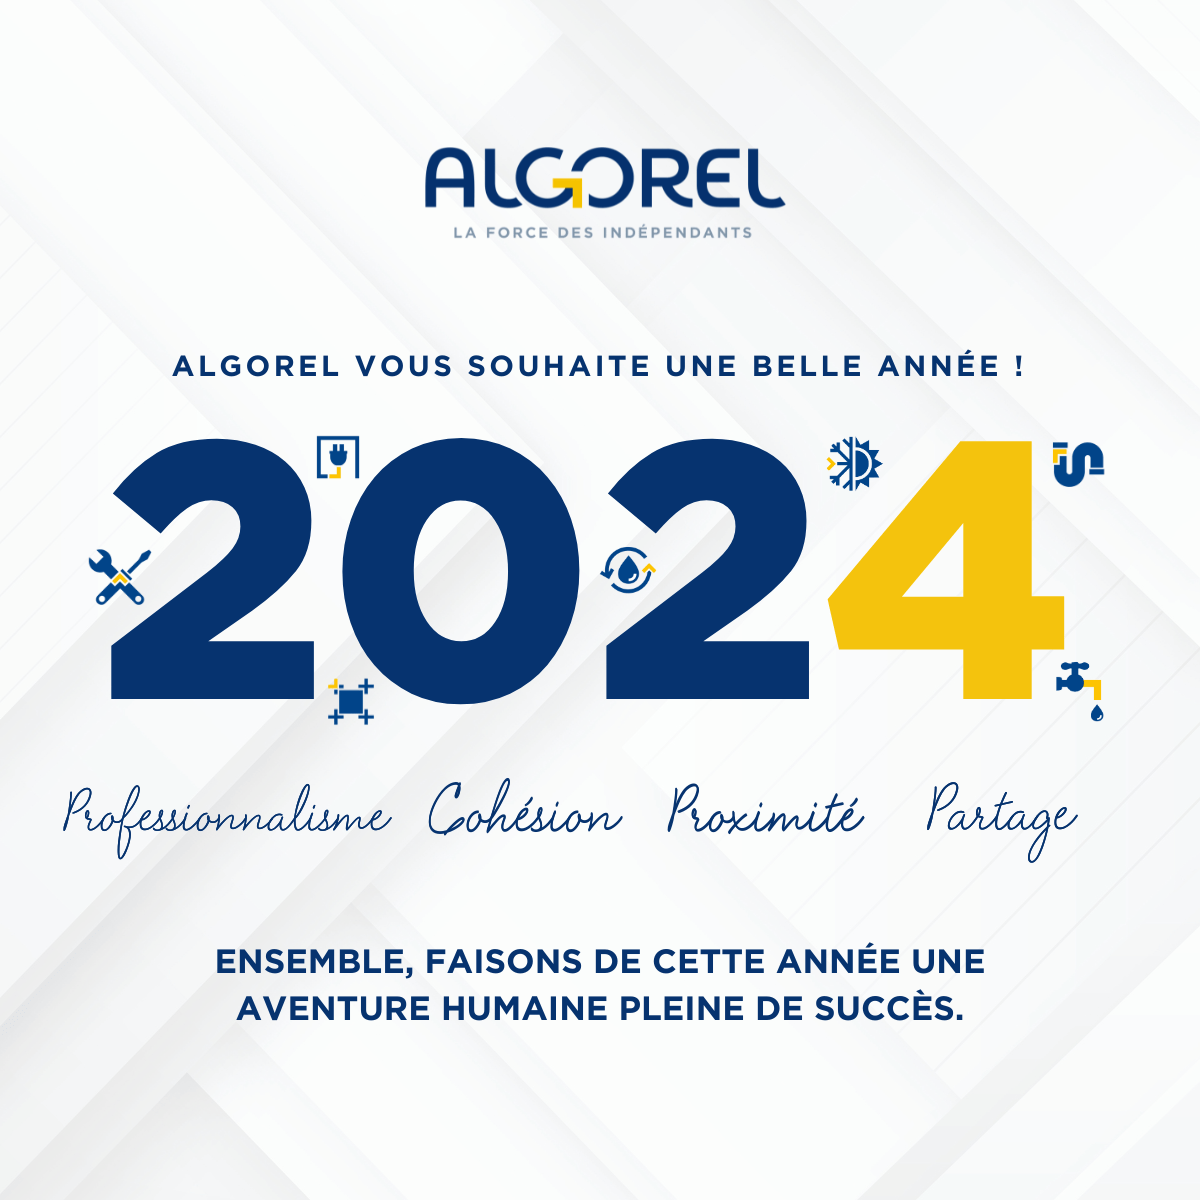 Le Groupement Algorel vous souhaite une belle année 2024 !